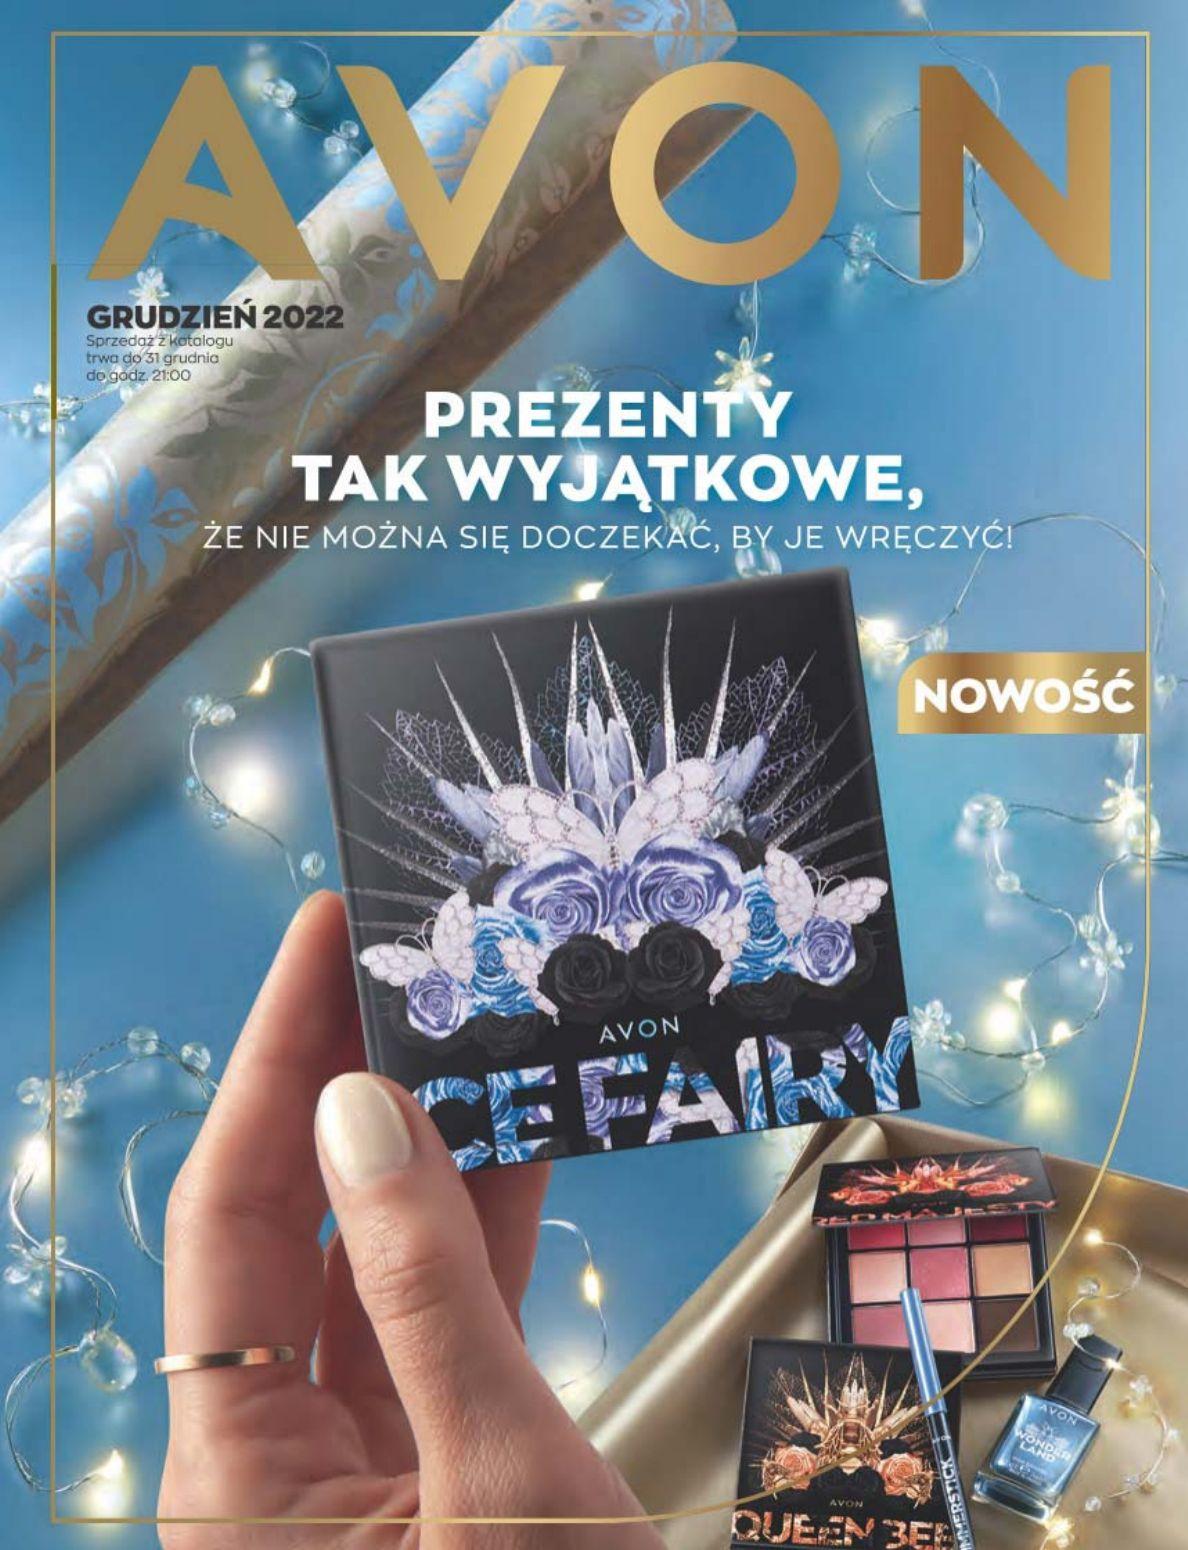 Gazetka promocyjna Avon do 31/12/2022 str.1